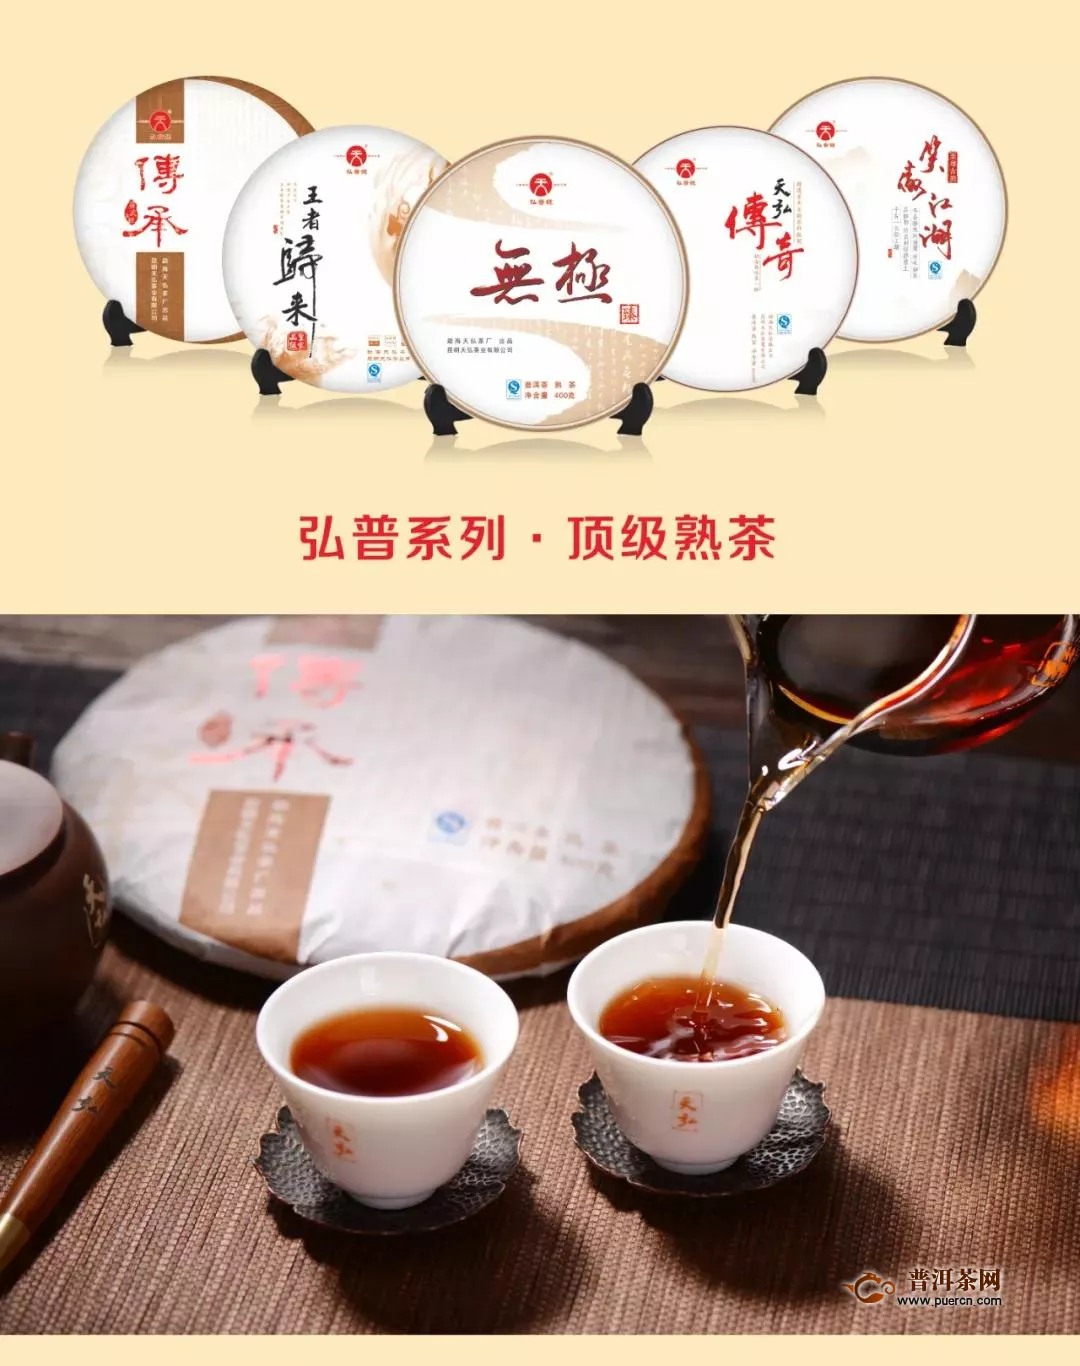 与天弘相约青岛—2020北方国际茶产业博览会